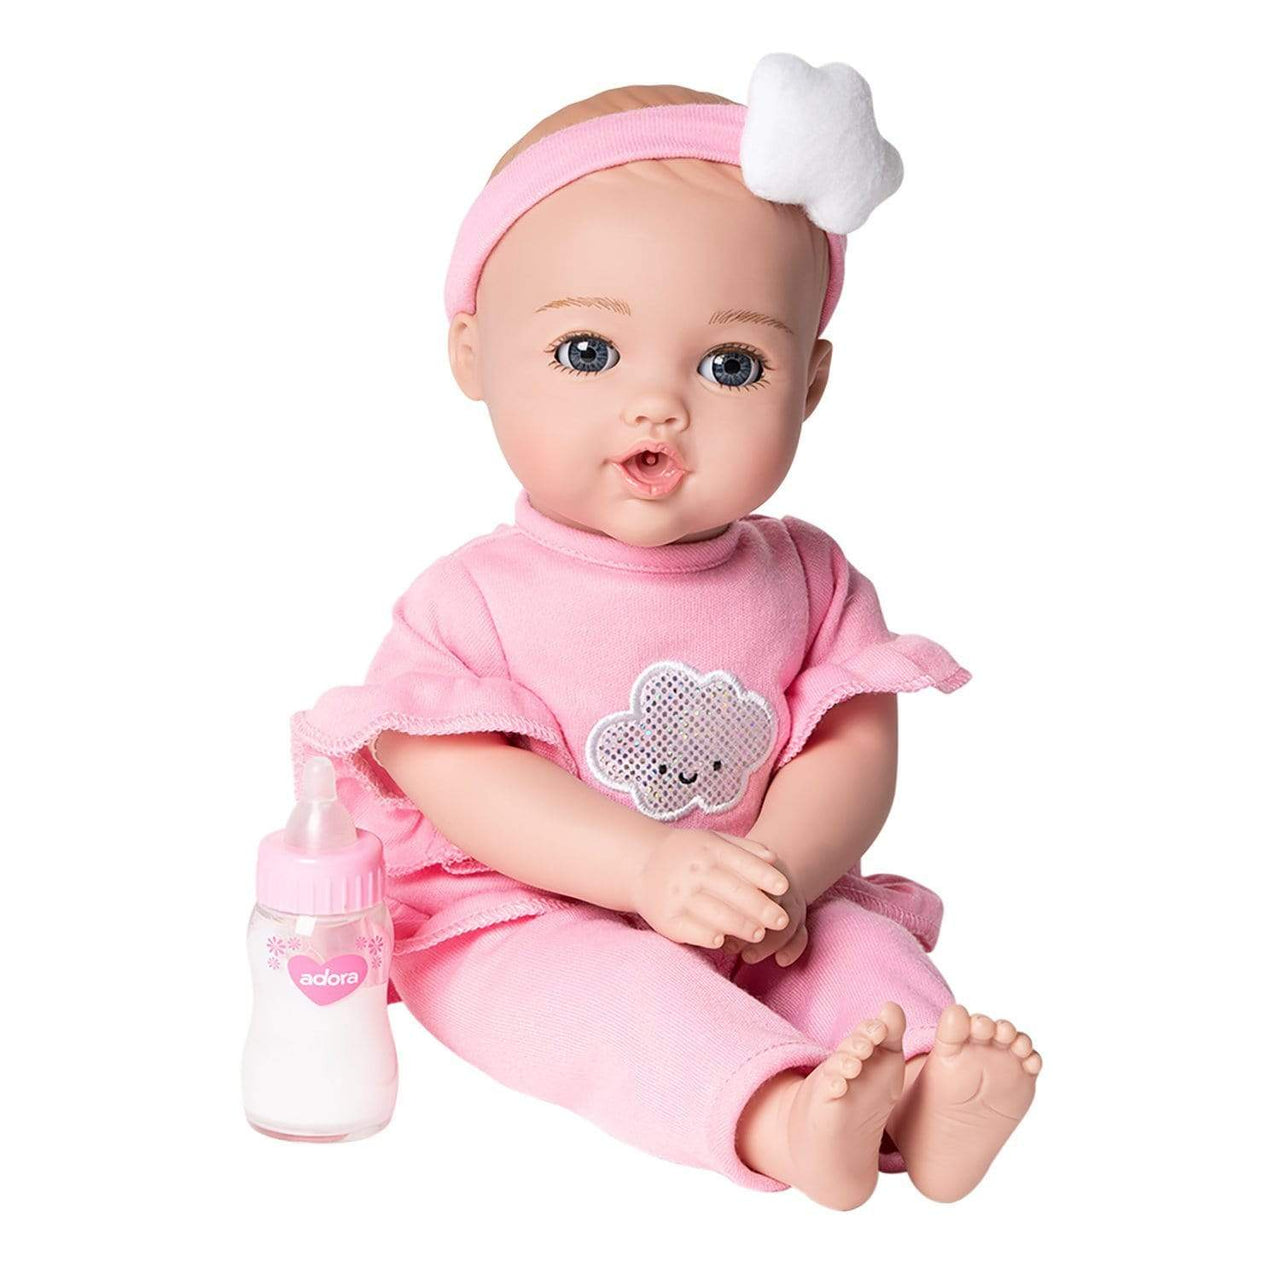 Adora NurtureTime Interactive Baby Doll, Clothes, & Accessories Set